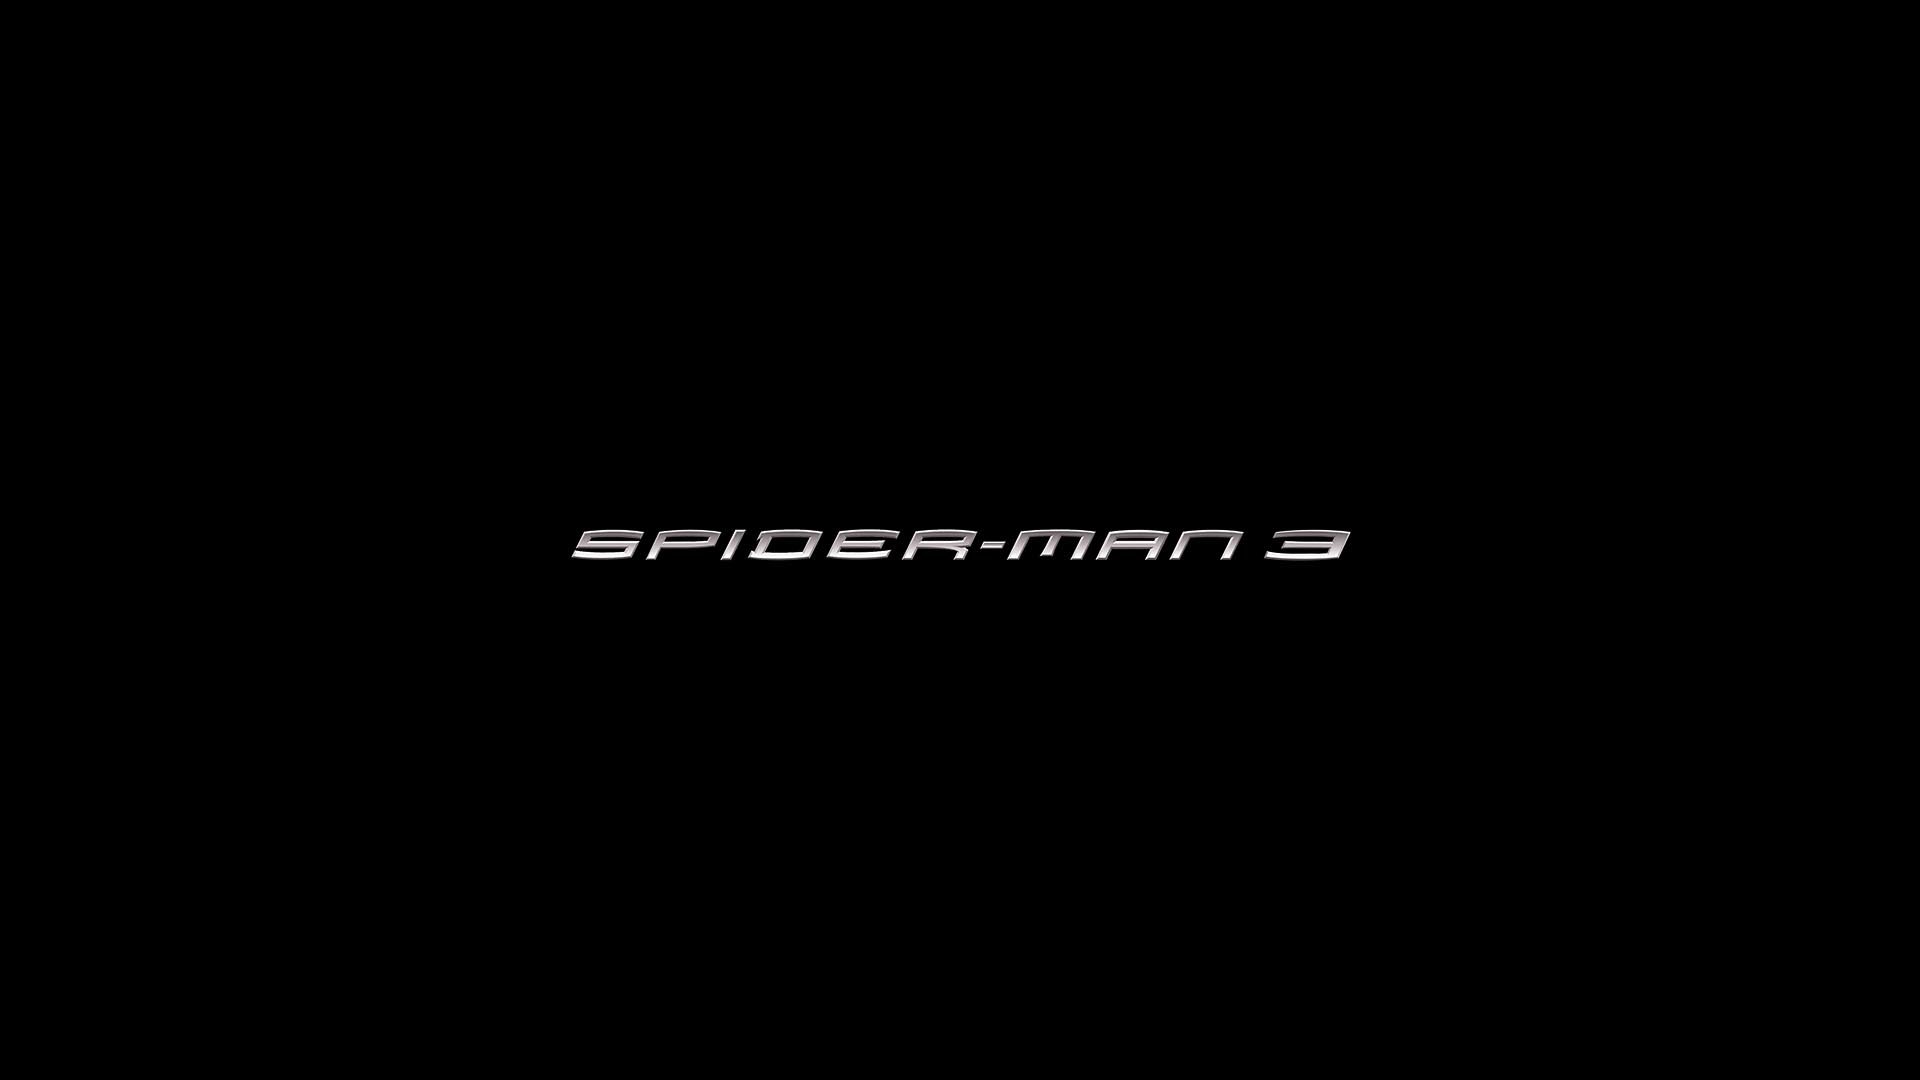 Koleksi Gambar Wallpaper Spiderman 3d